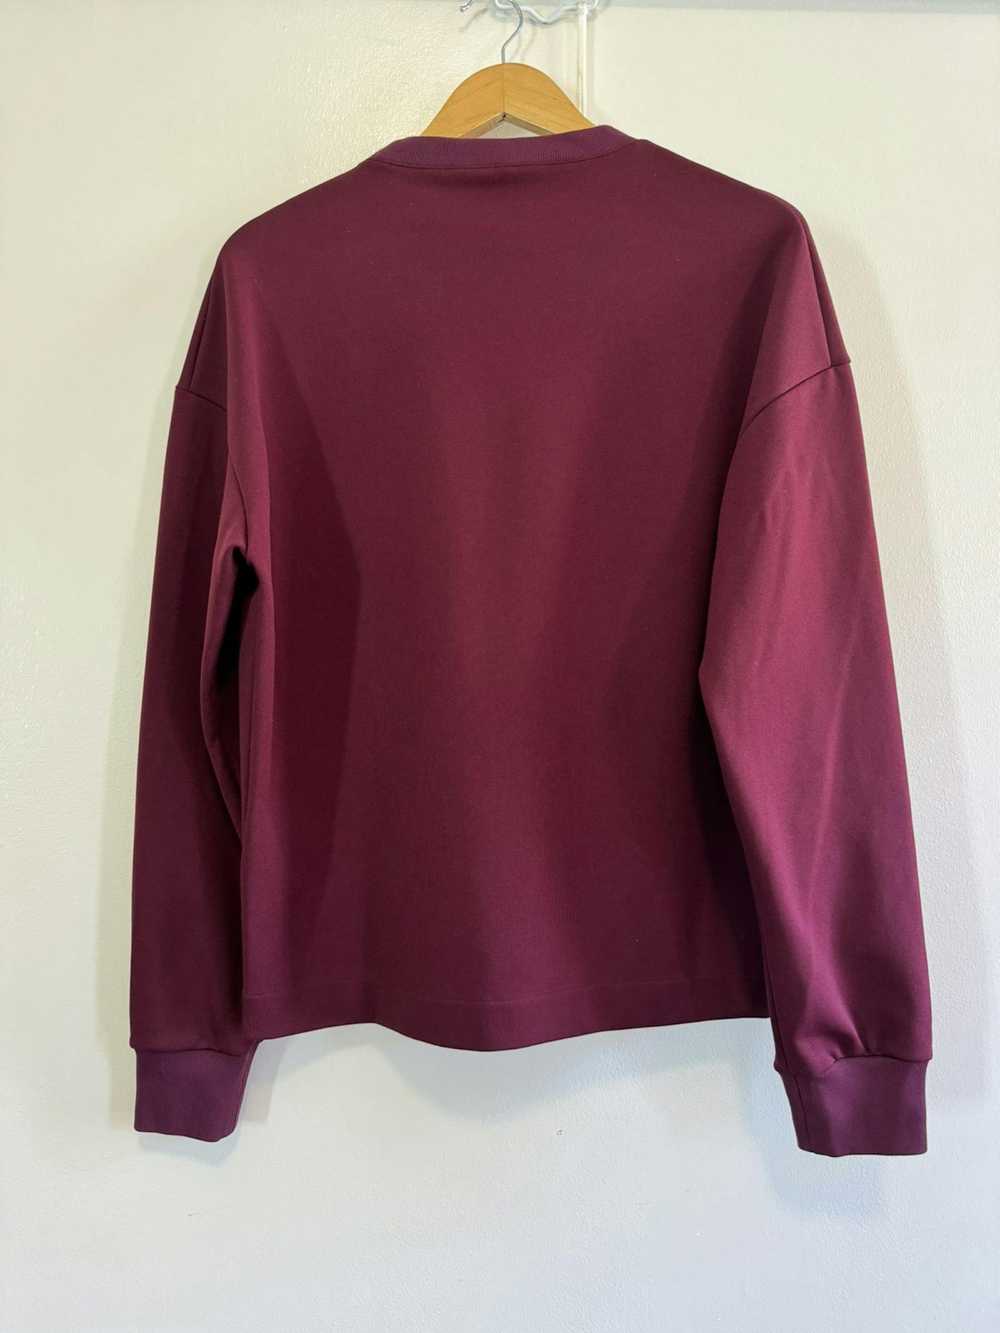 Jil Sander Jil Sander maroon burgundy sweatshirt … - image 5